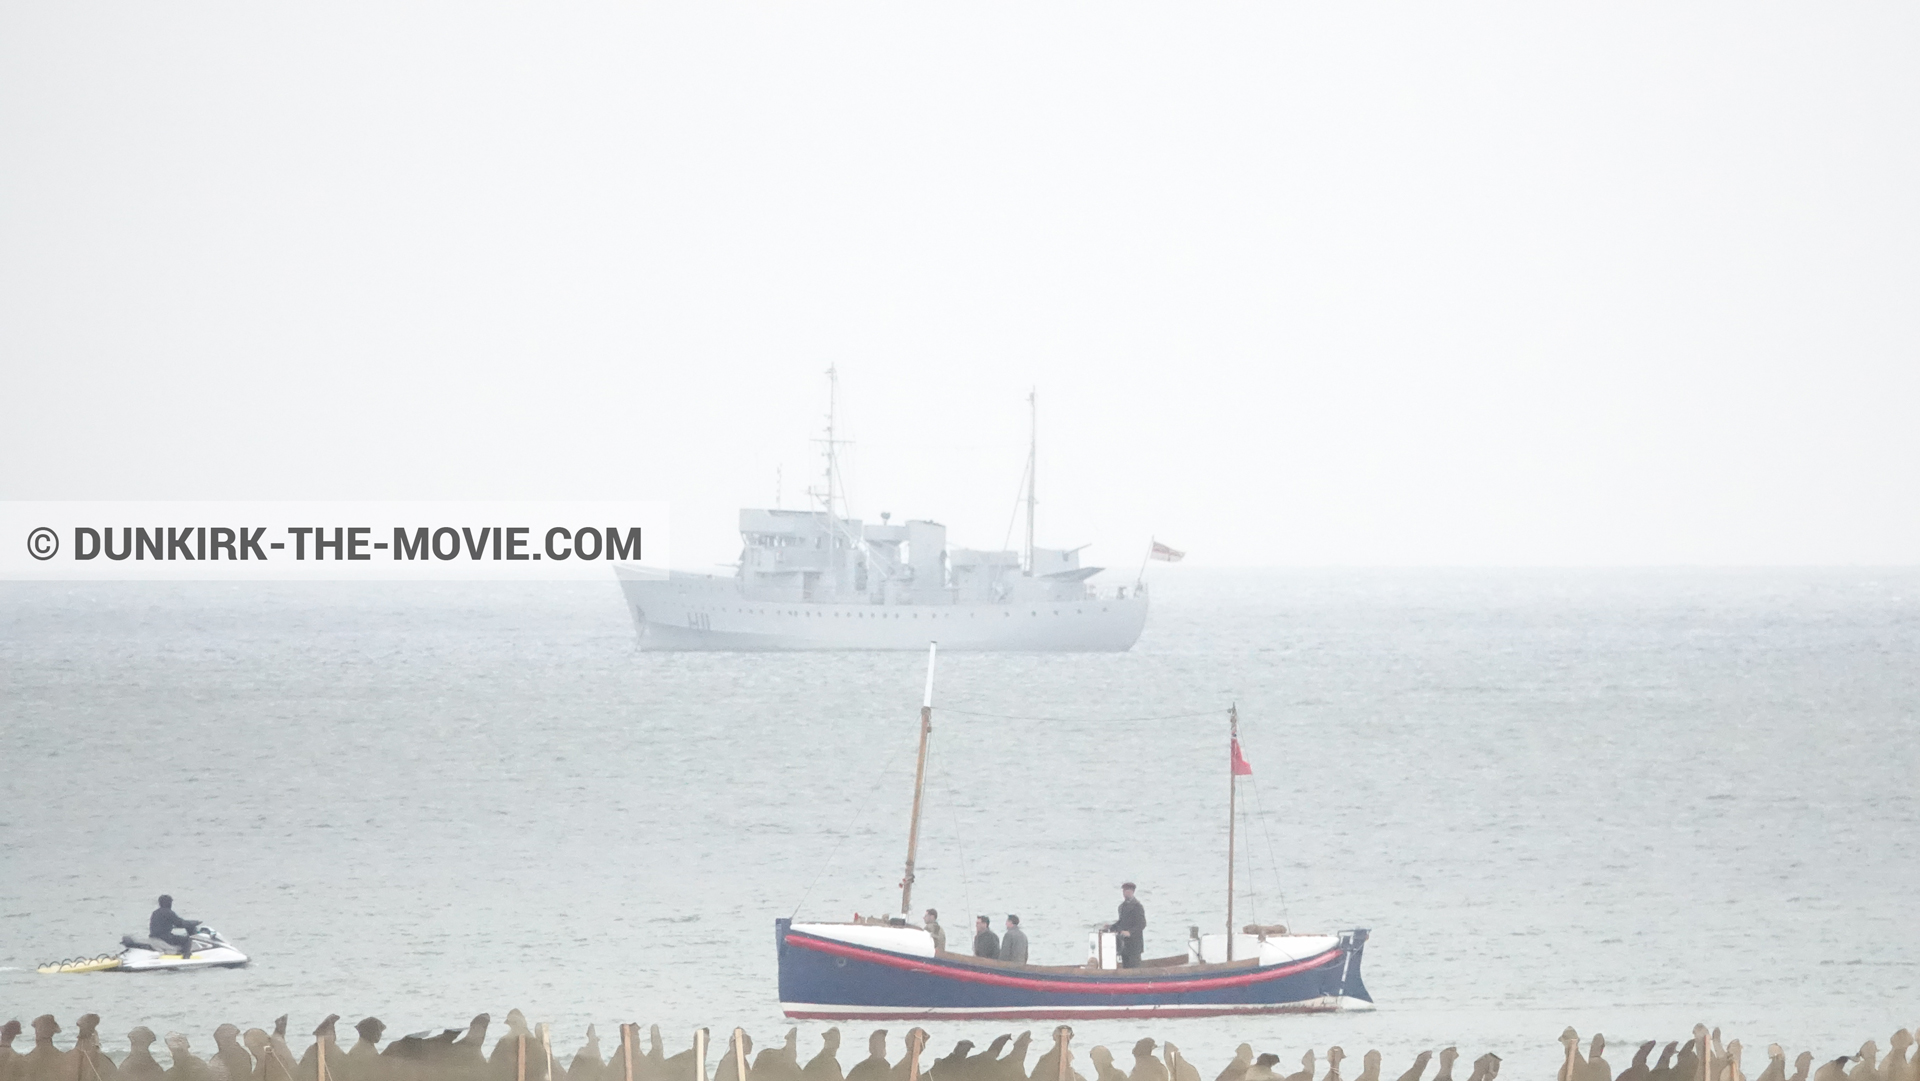 Fotos con barco, H11 - MLV Castor, del bote salvavidas Henry Finlay,  durante el rodaje de la película Dunkerque de Nolan